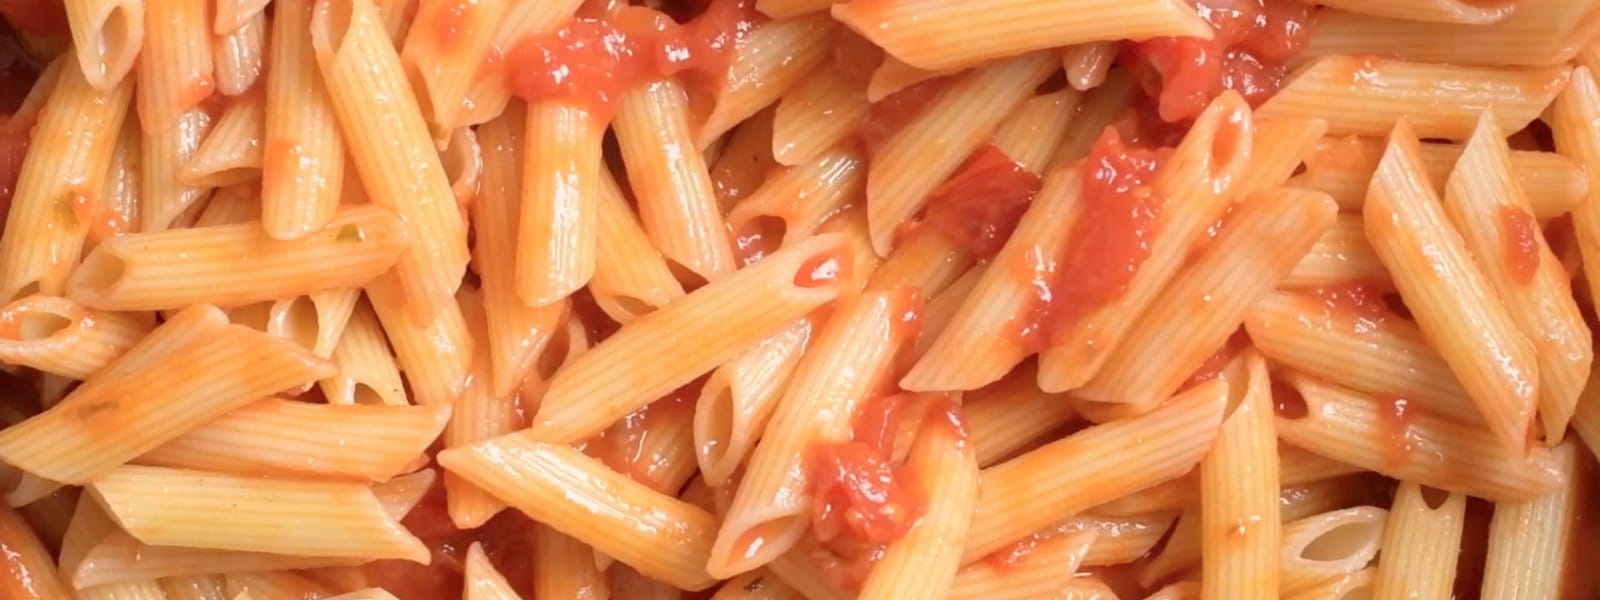 Hoe maak je extra smaakvolle pasta?